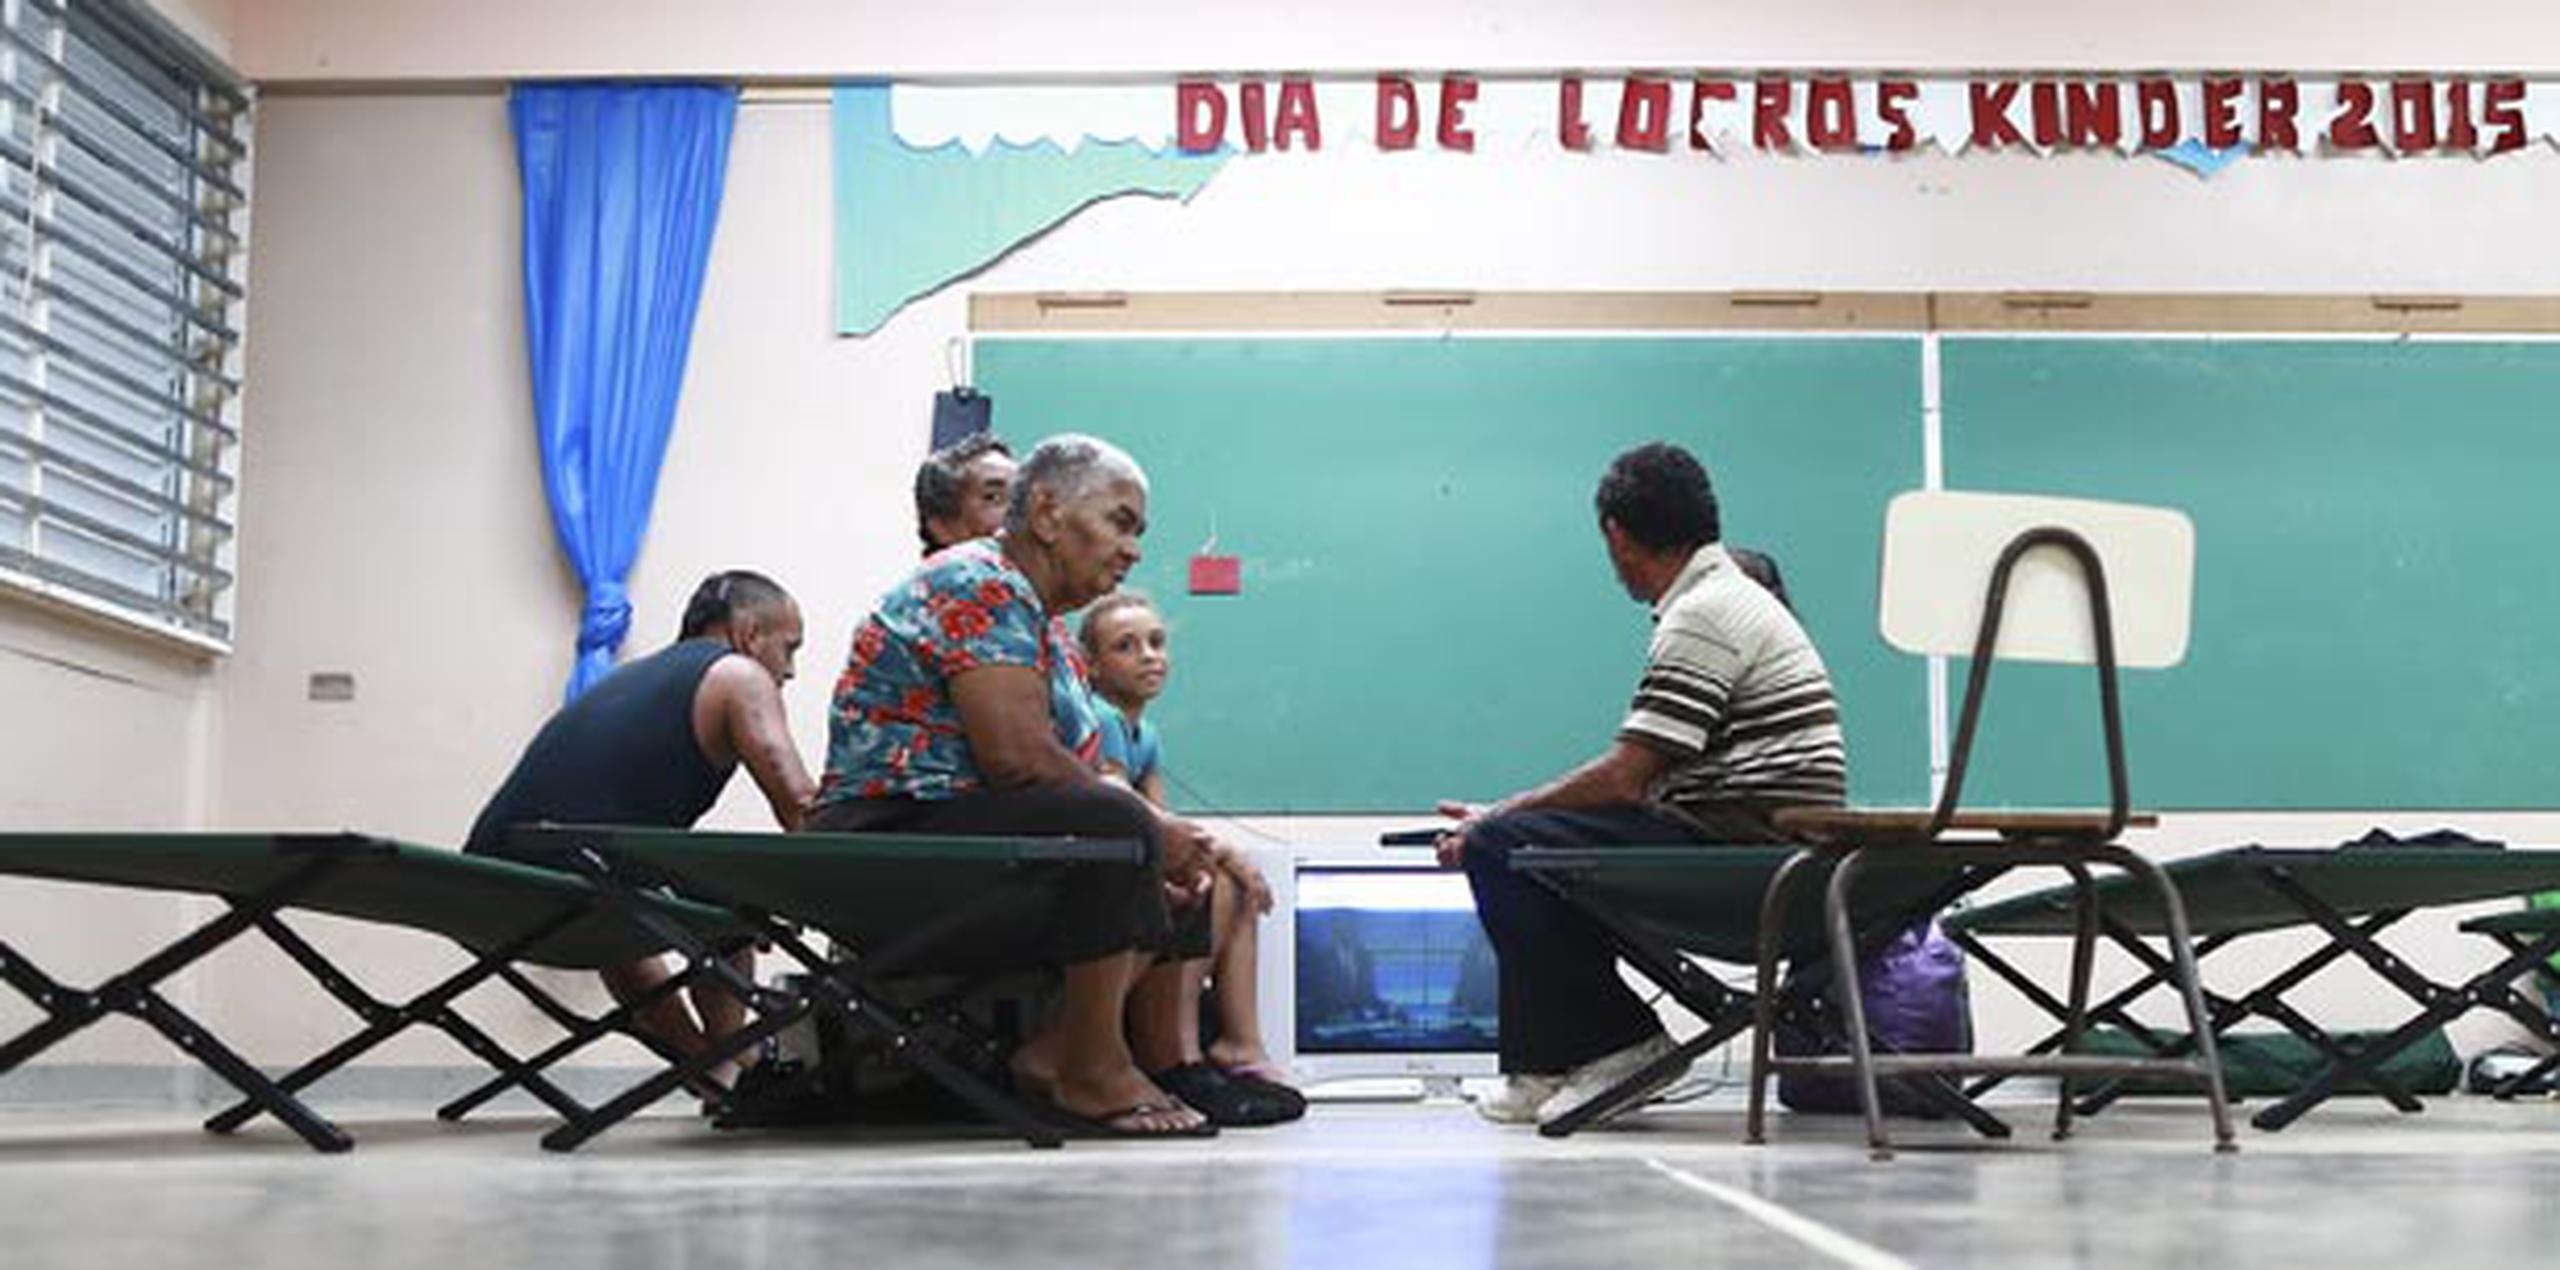 Seis personas, incluyendo un menor de edad, figuraron entre los primeros que llegaron a la escuela María T. Delgado. (angel.rivera@gfrmedia.com)